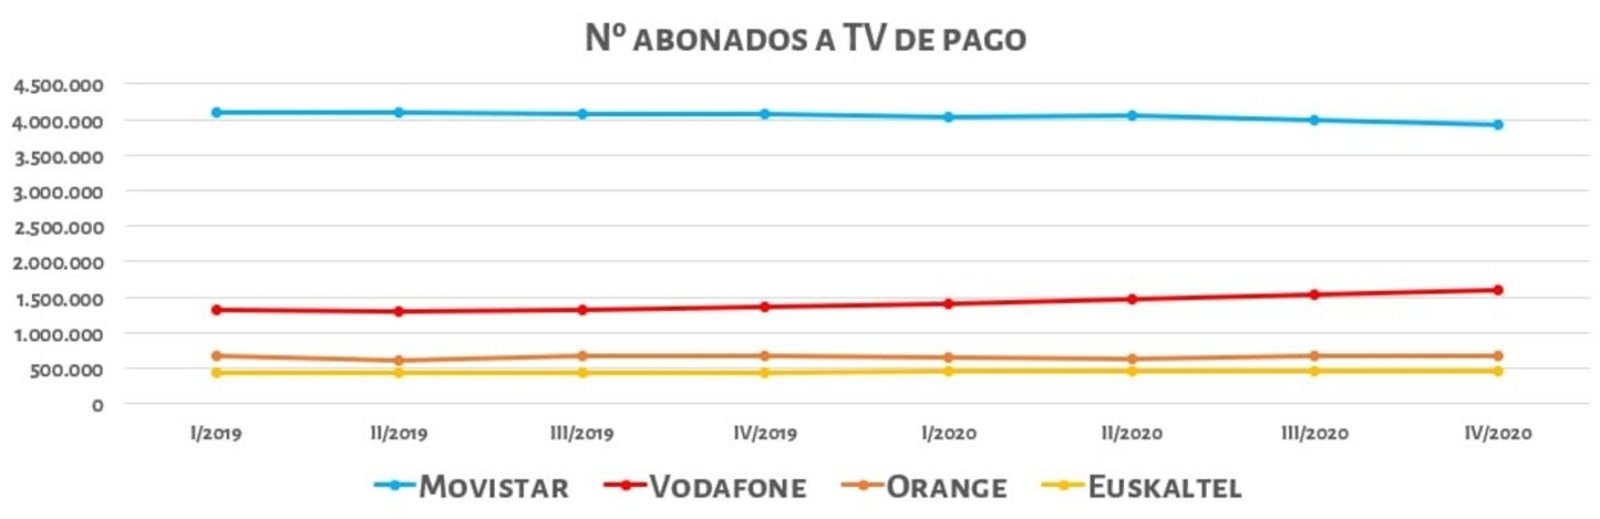 Mercado TV de pago en España, Q4 de 2020.